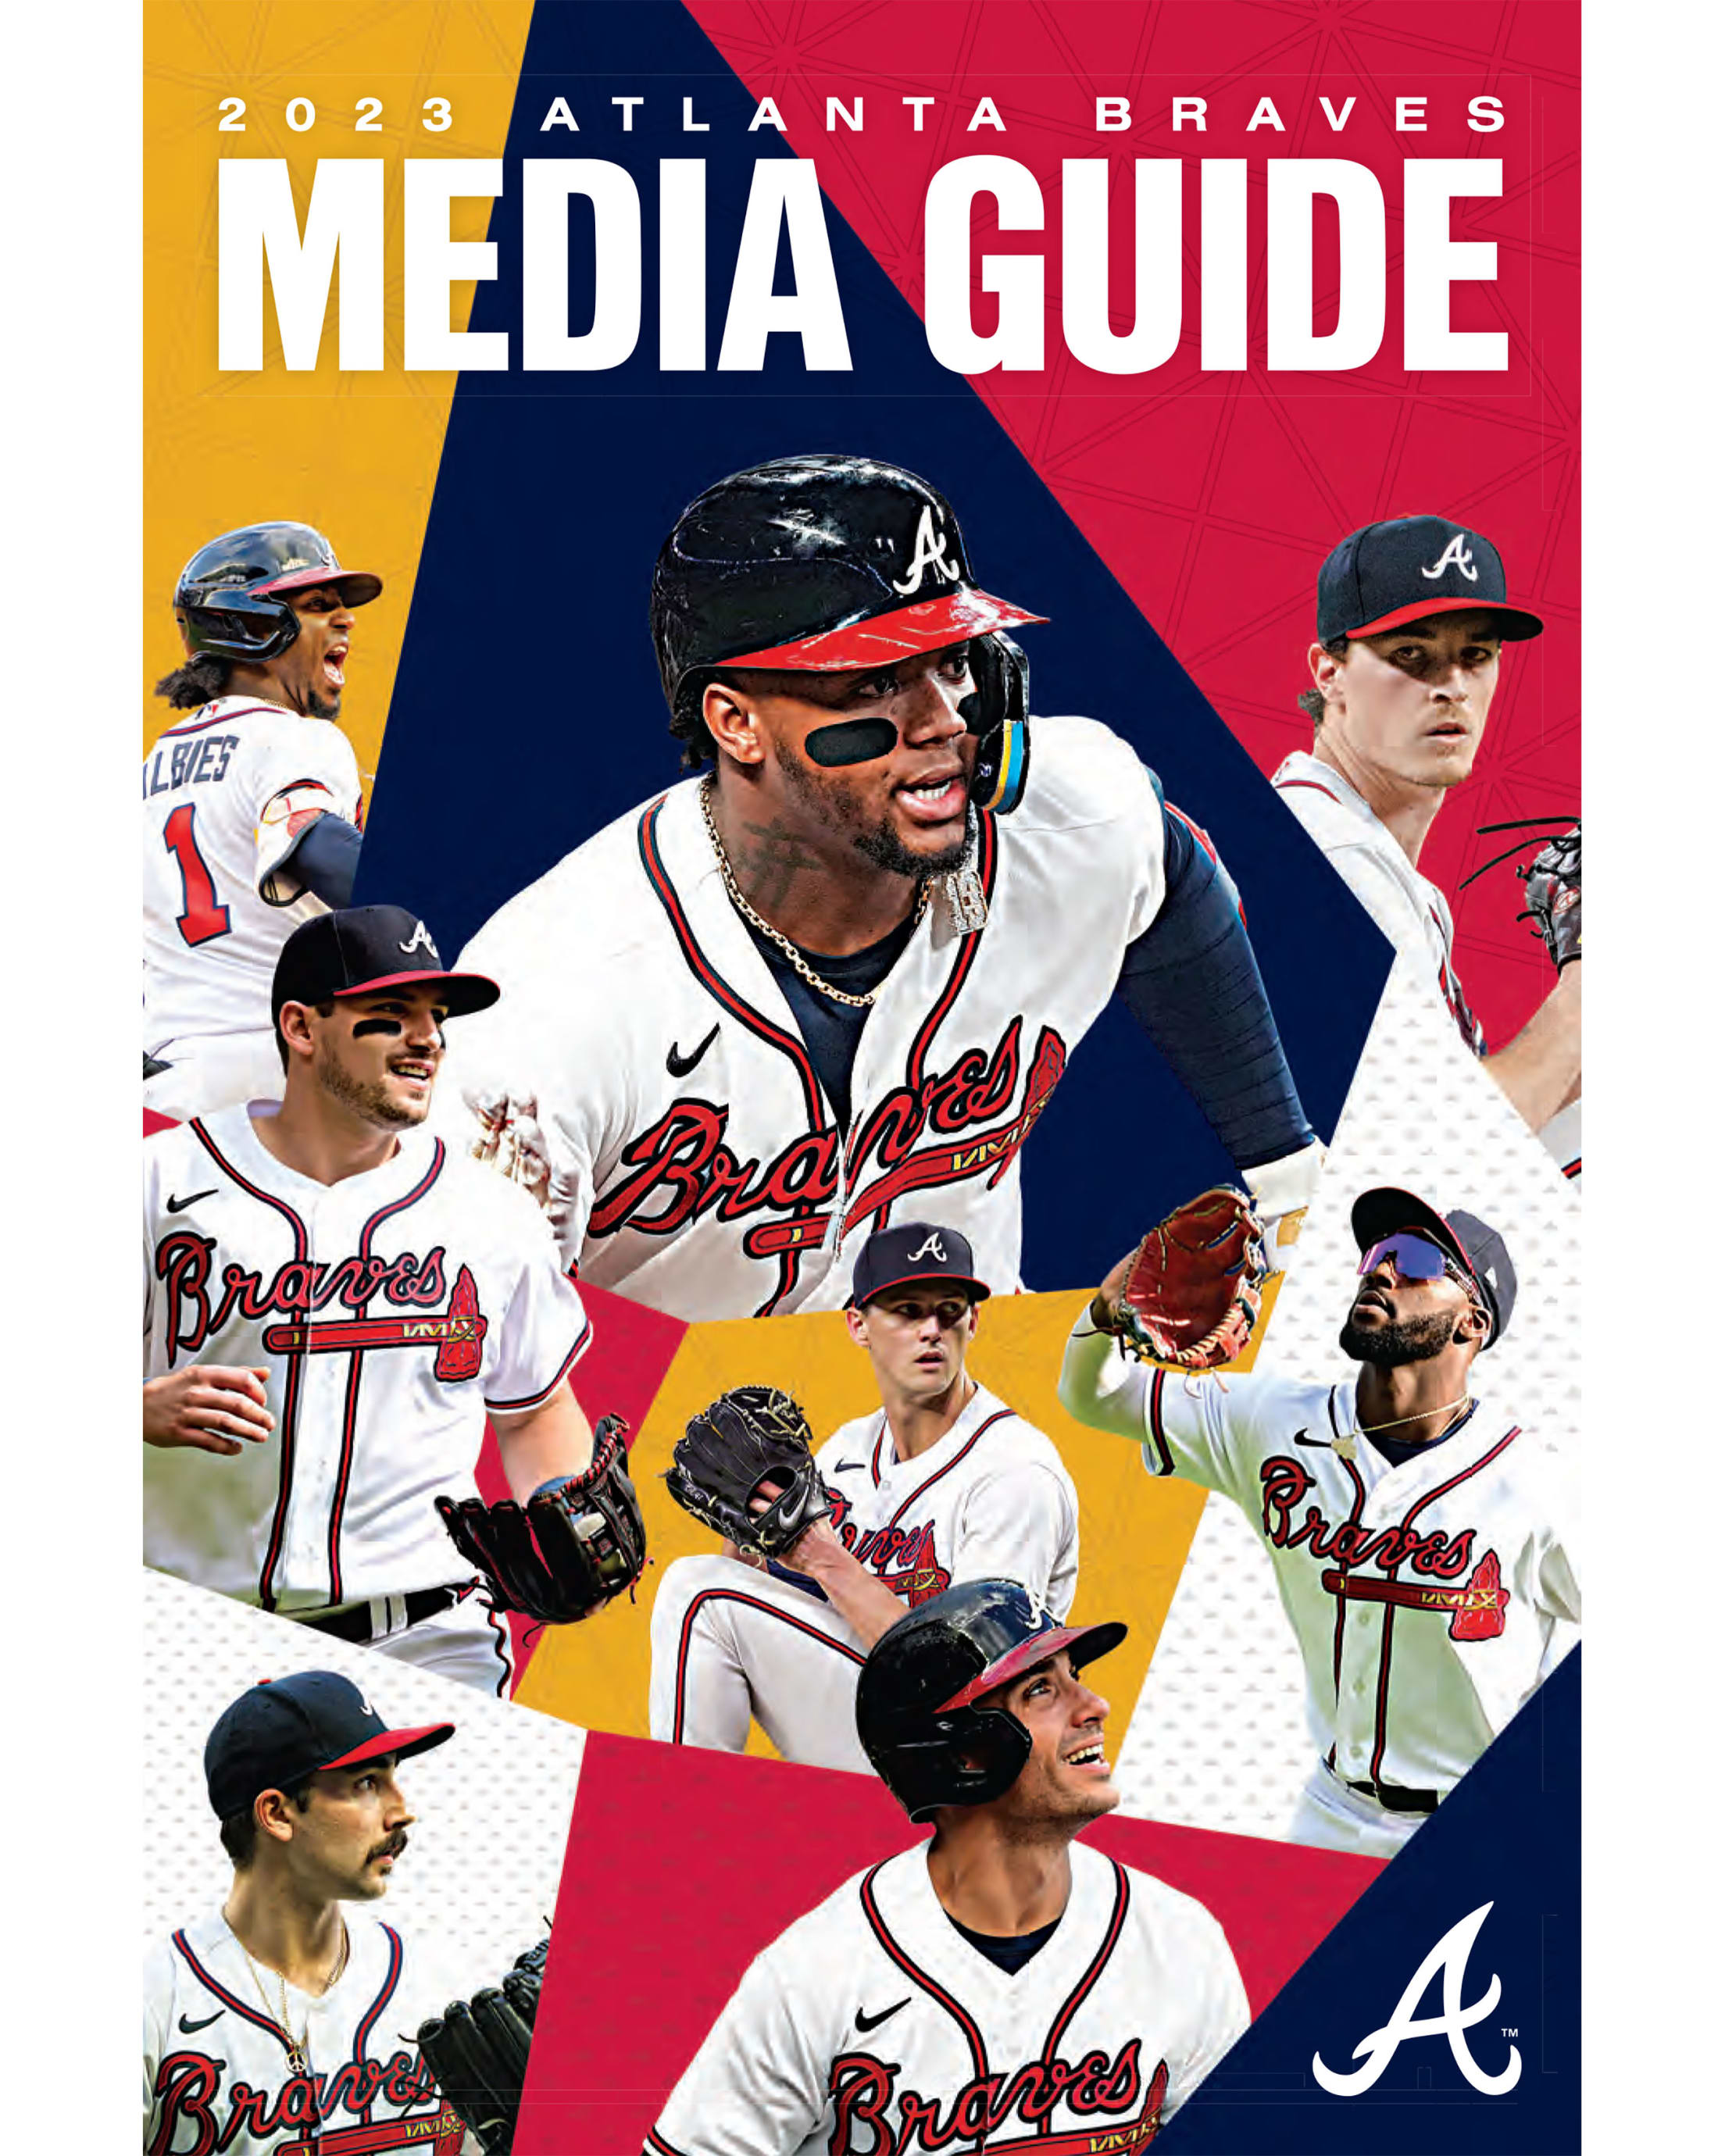 2011 Atlanta Braves Media Guide, PDF, Atlanta Braves